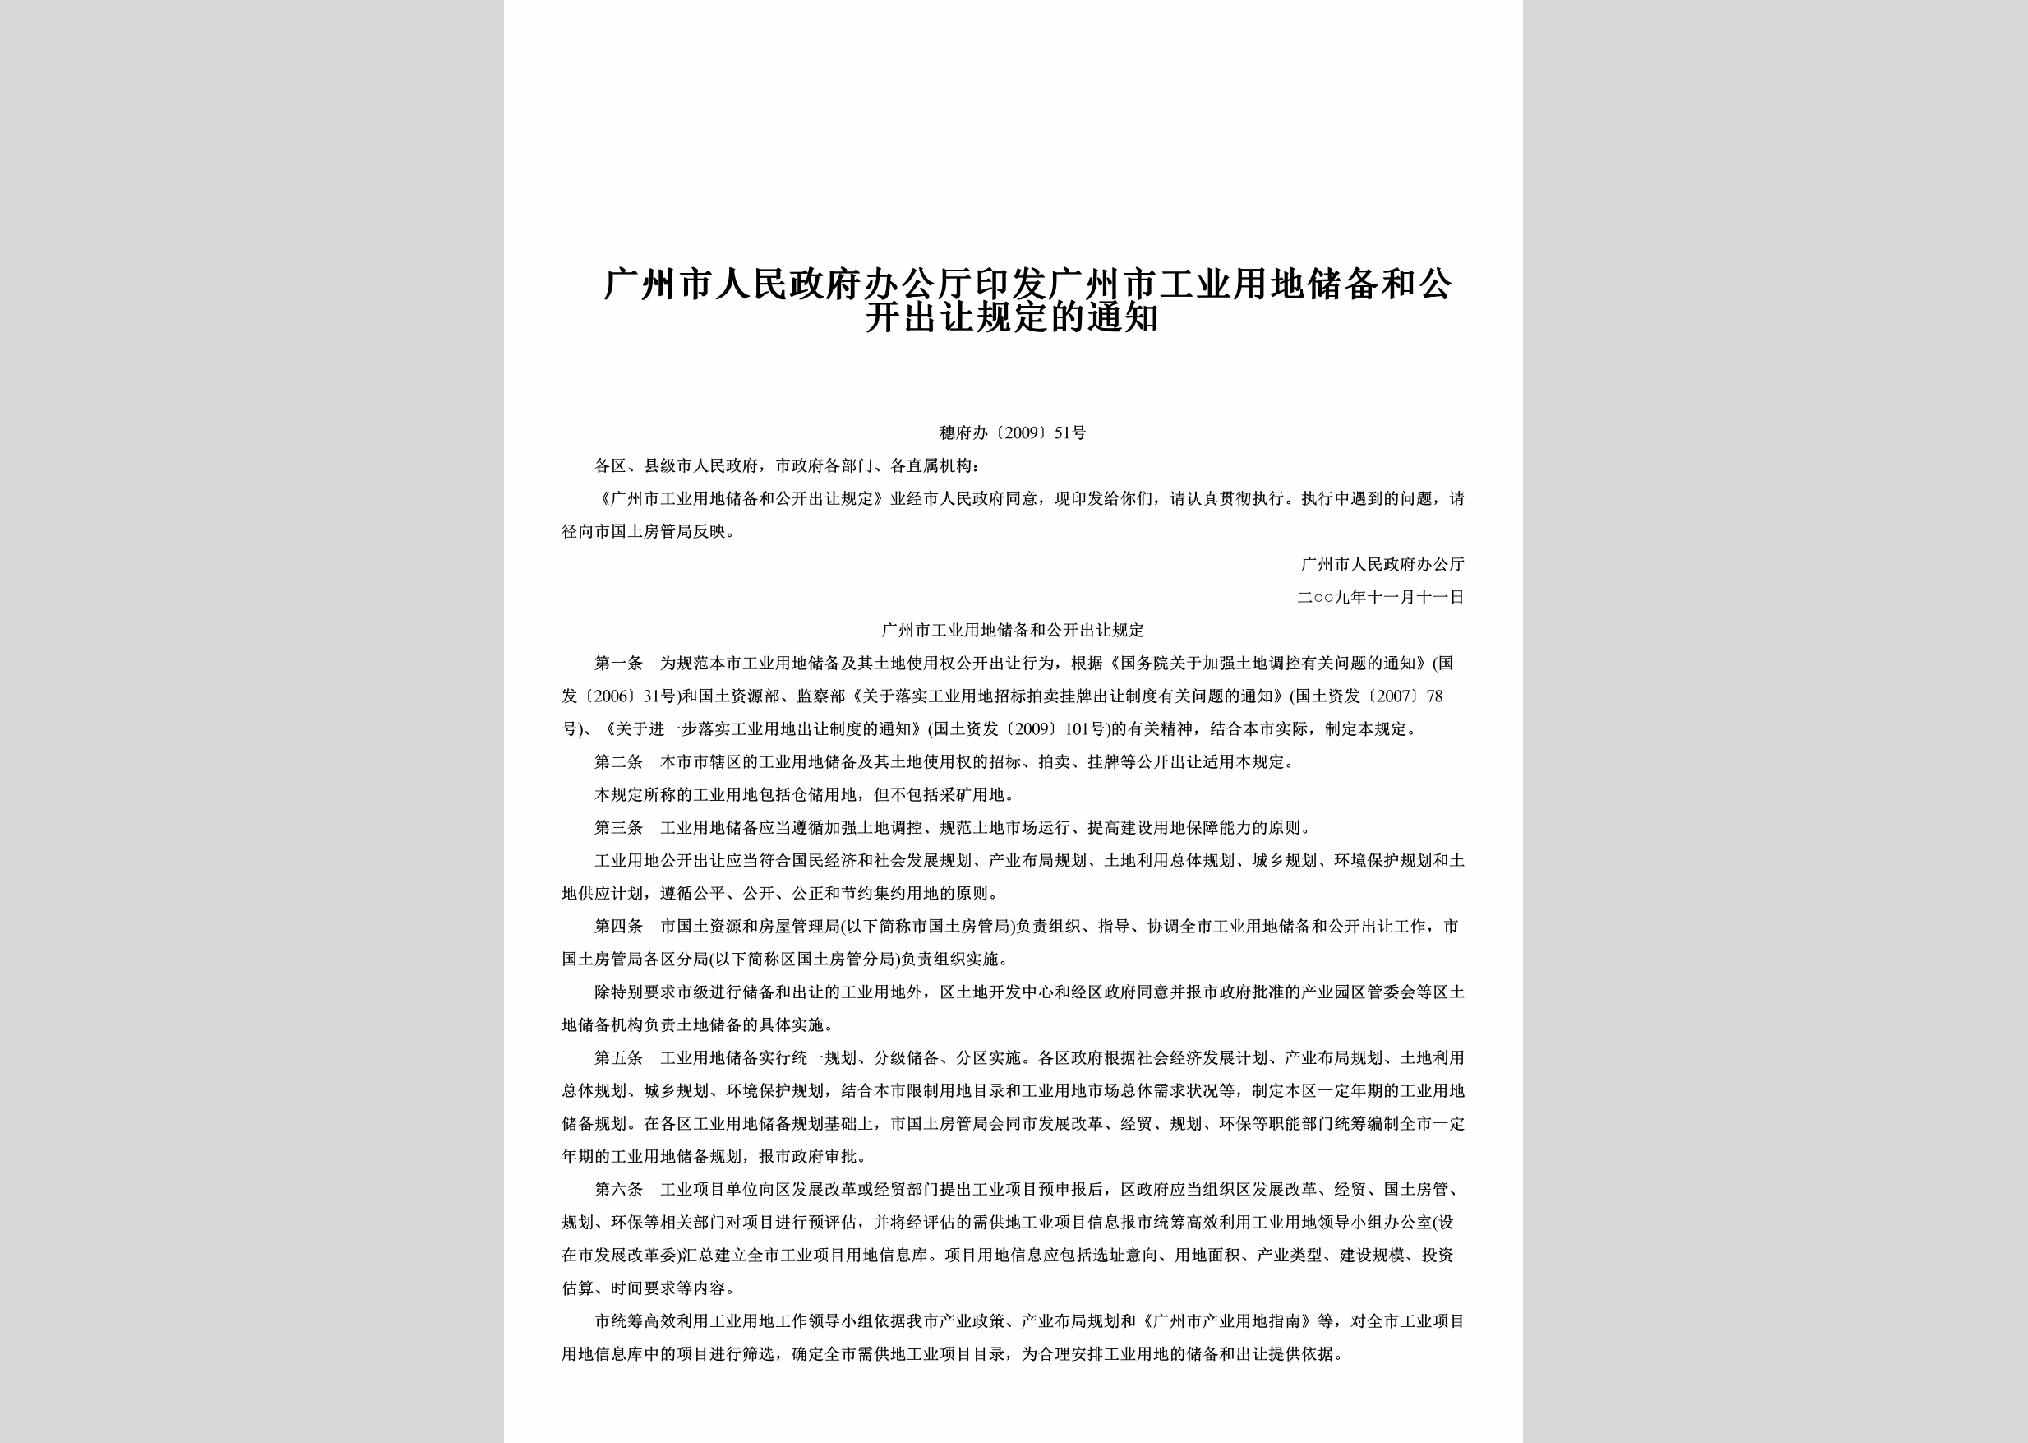 穗府办[2009]51号：印发广州市工业用地储备和公开出让规定的通知